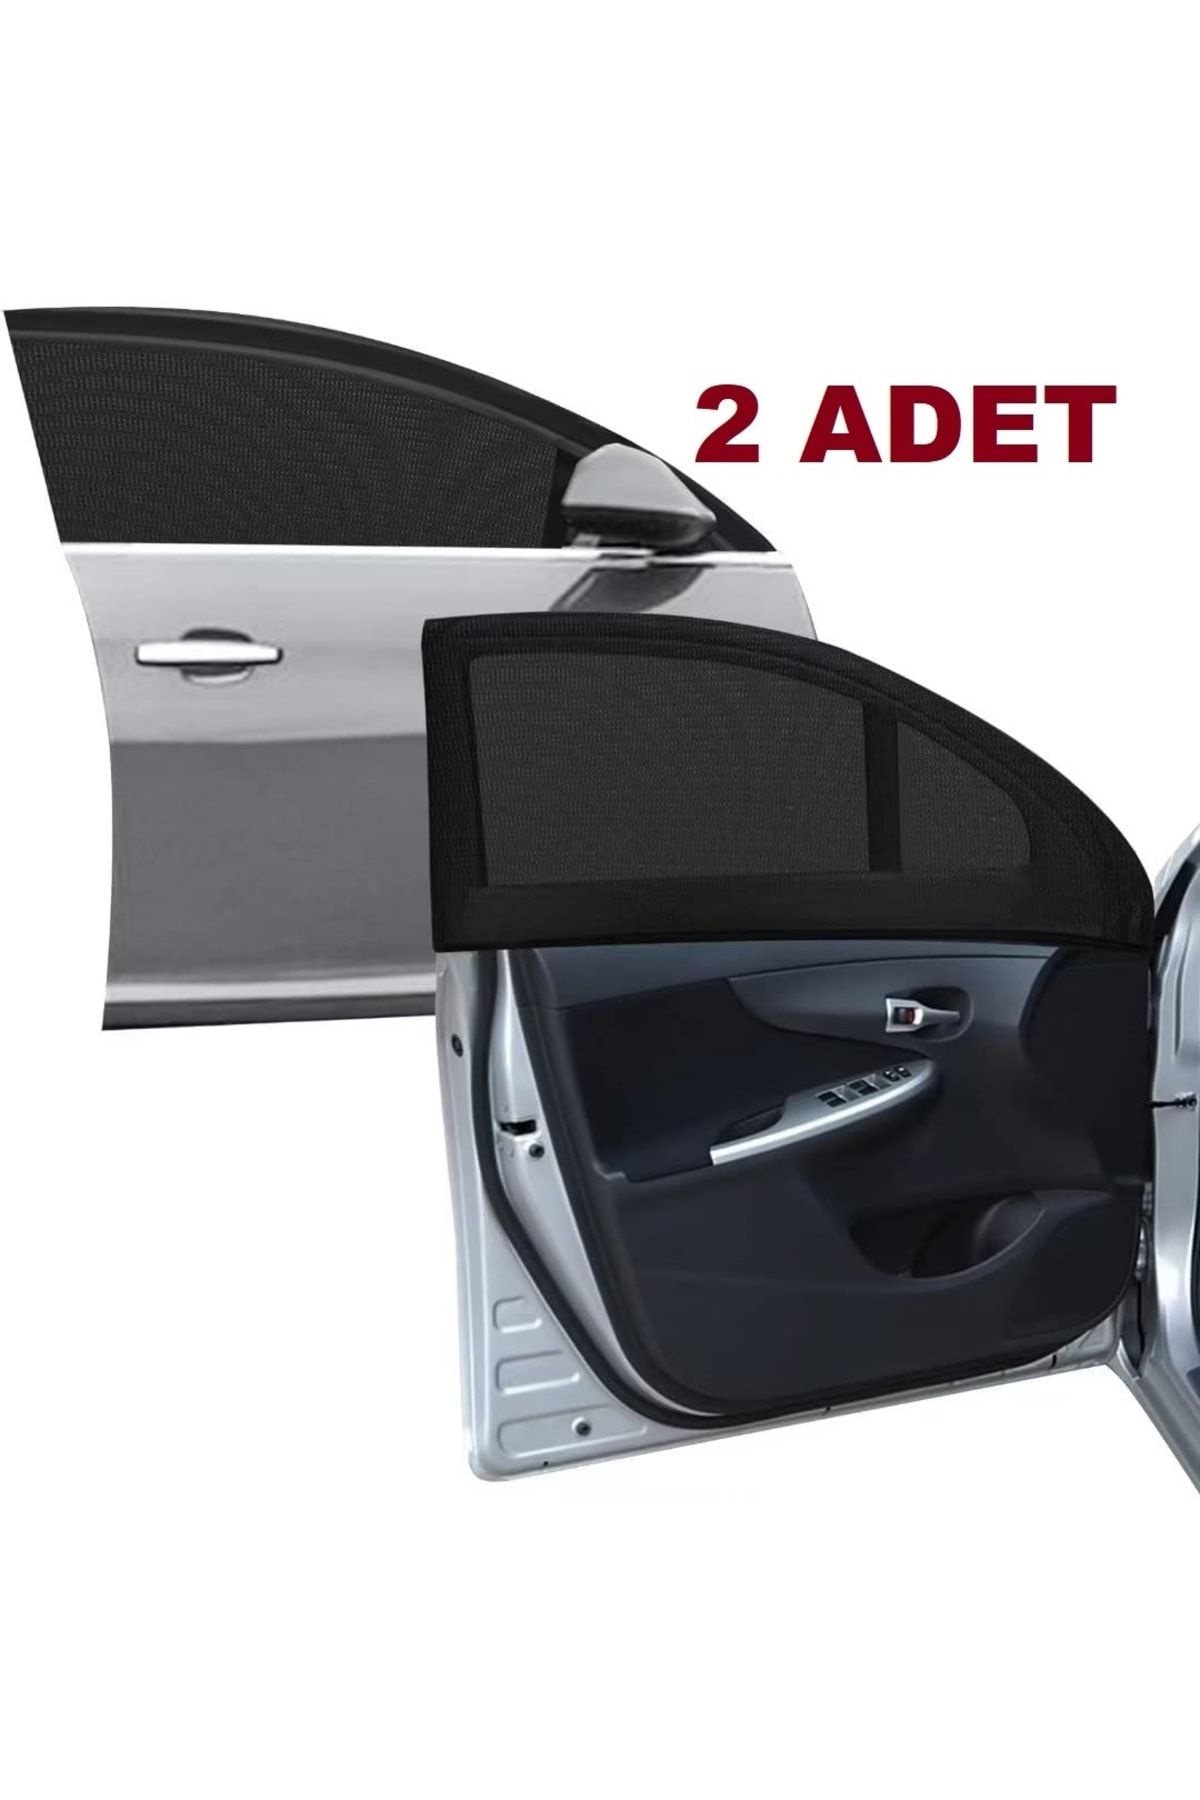 Ankaflex 2 Adet Oto Cam Güneşlik Araba Gölgelik Perde Araç Içi Yan Cam Pencere Güneşliği Arka Yan Cam Kılıfı